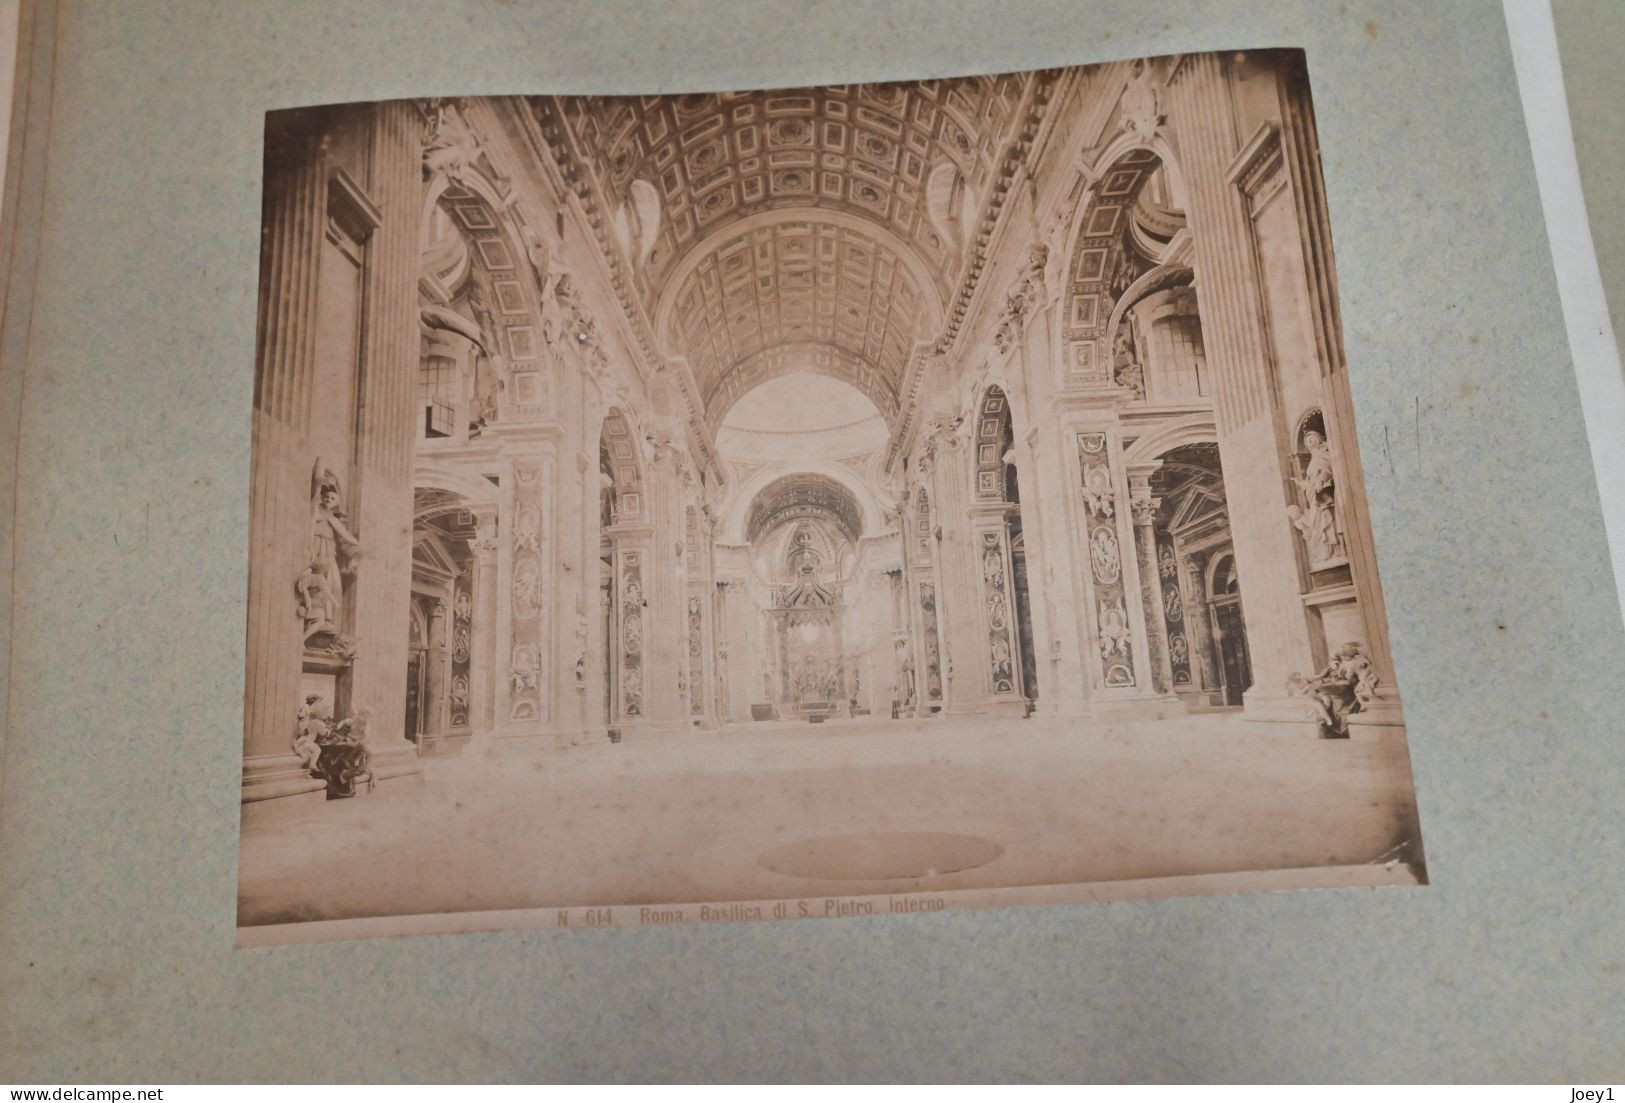 Album photos albuminées 19ème siècle Italie, Naples,Pompei Gènes, Pise, Rome...photos format 20/26